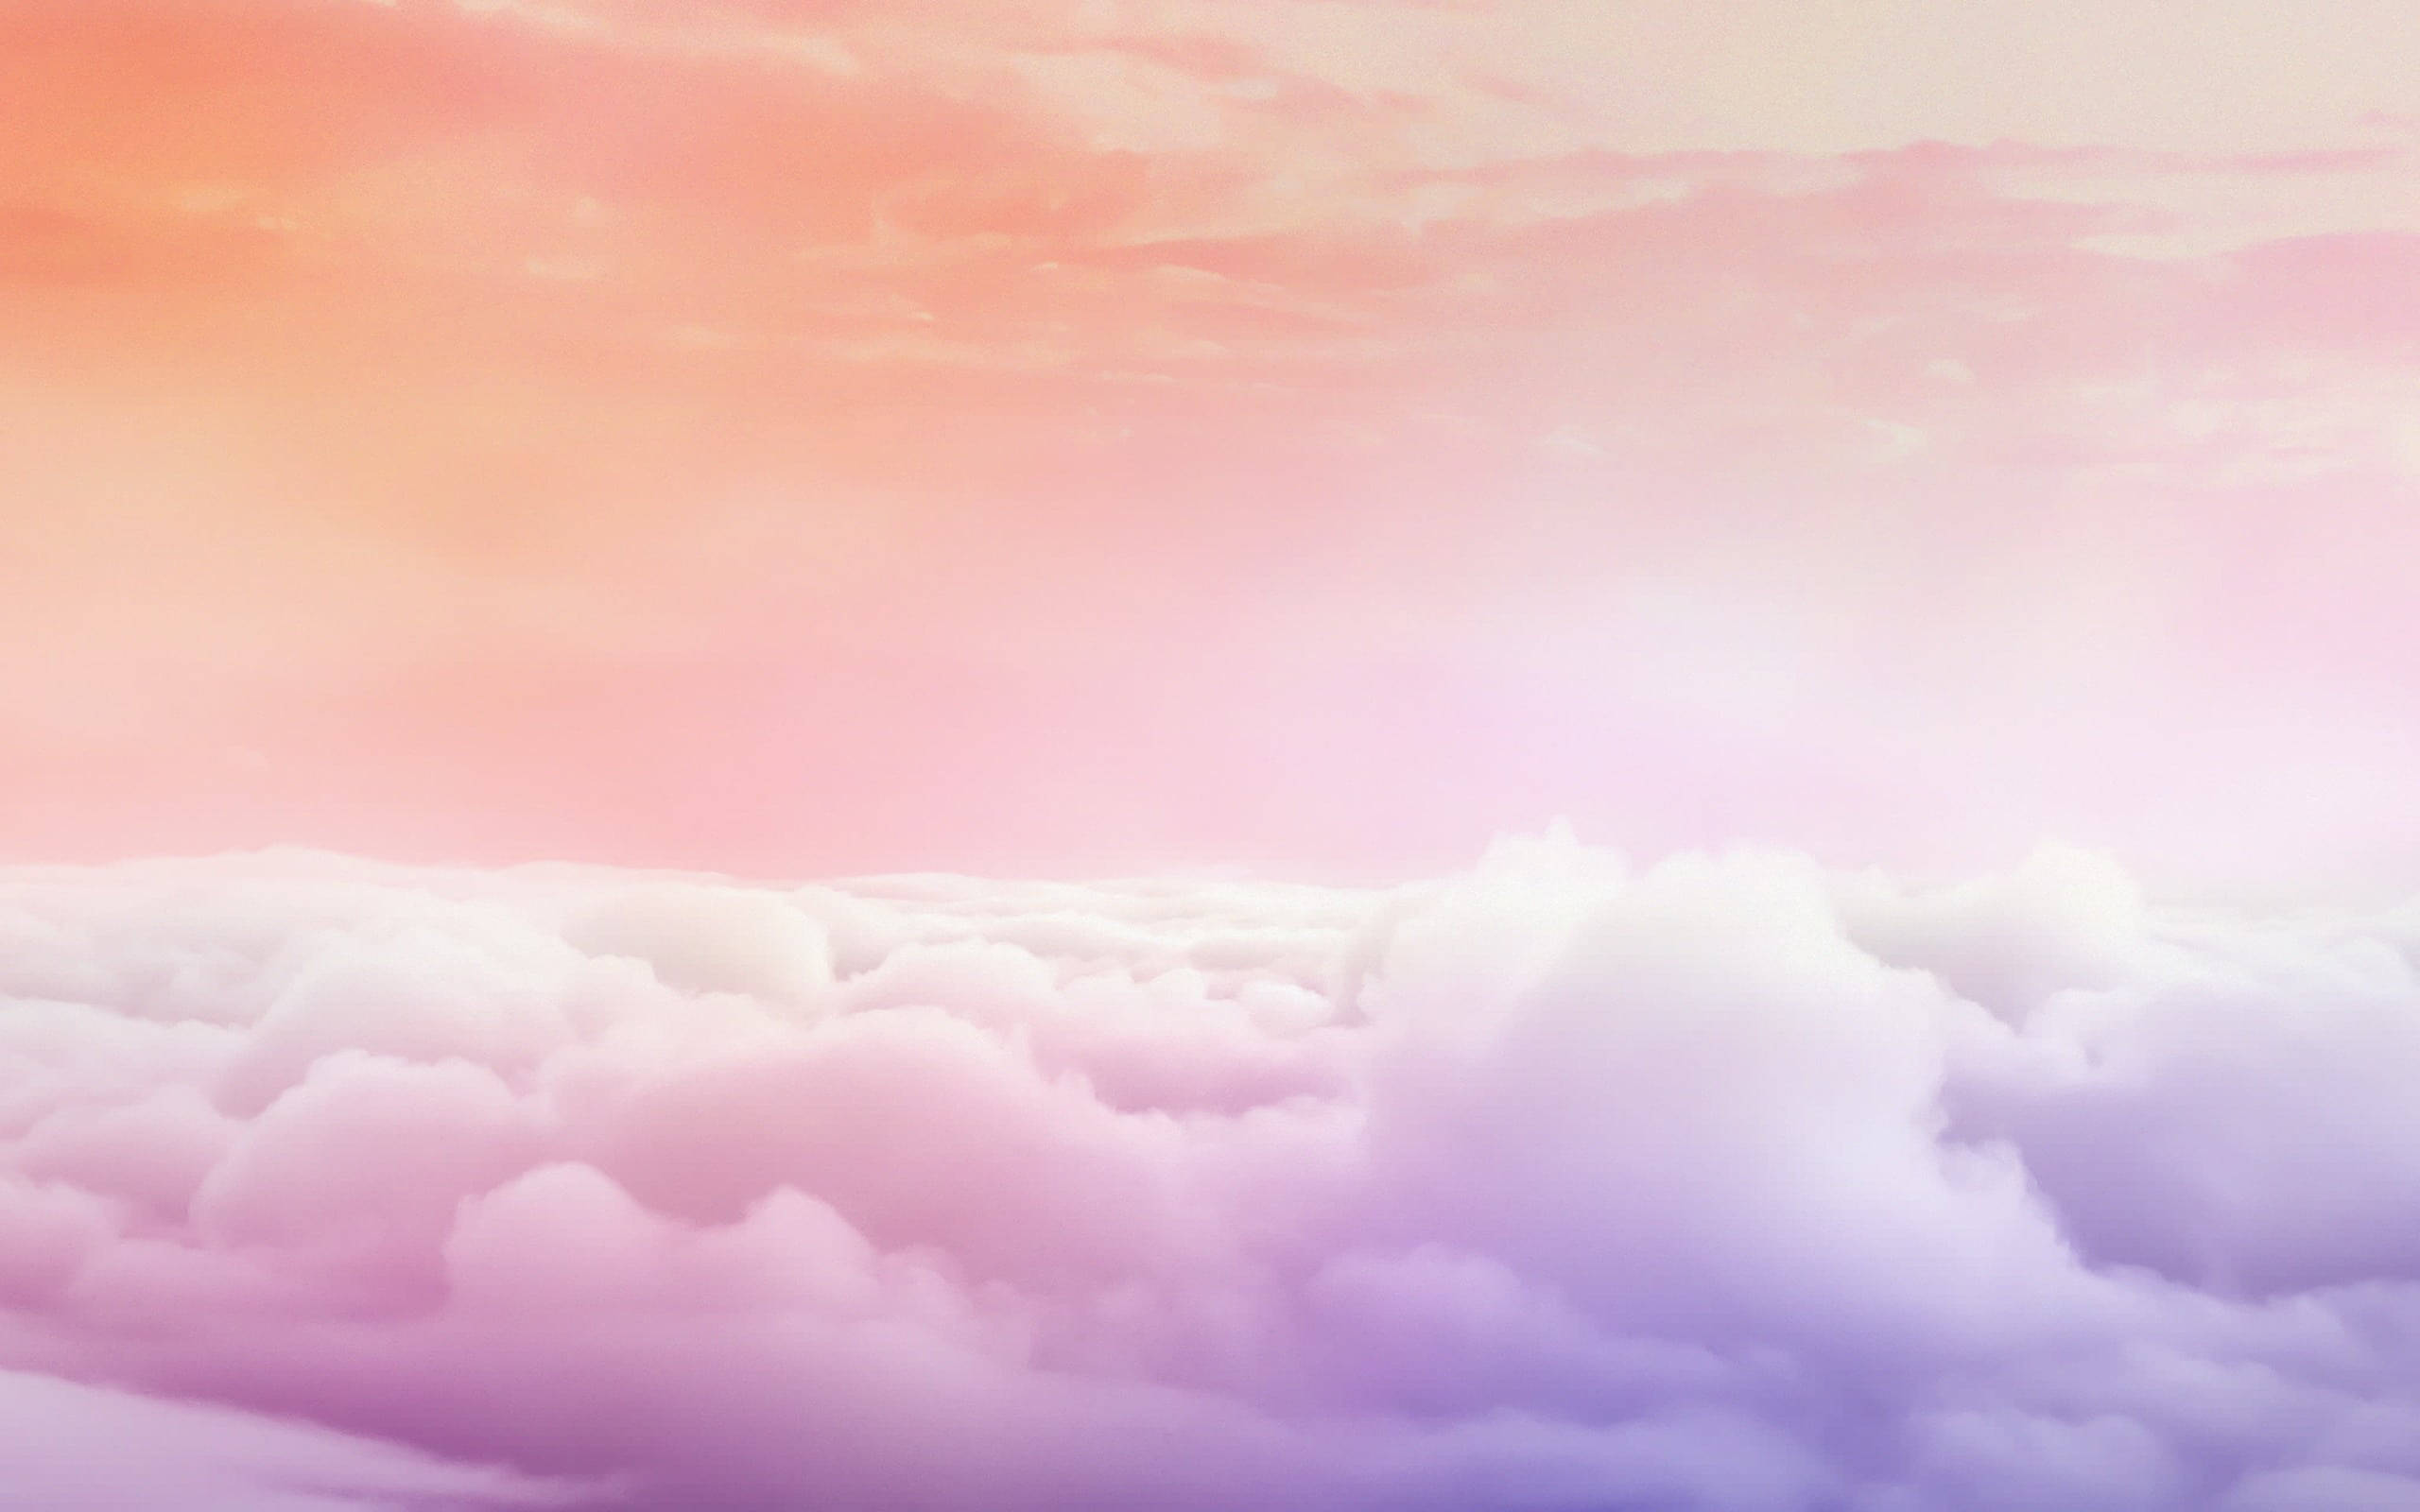  Hochauflösend Hintergrundbild 2560x1600. Downloaden Orangehimmel Hochauflösende Wolken Wallpaper